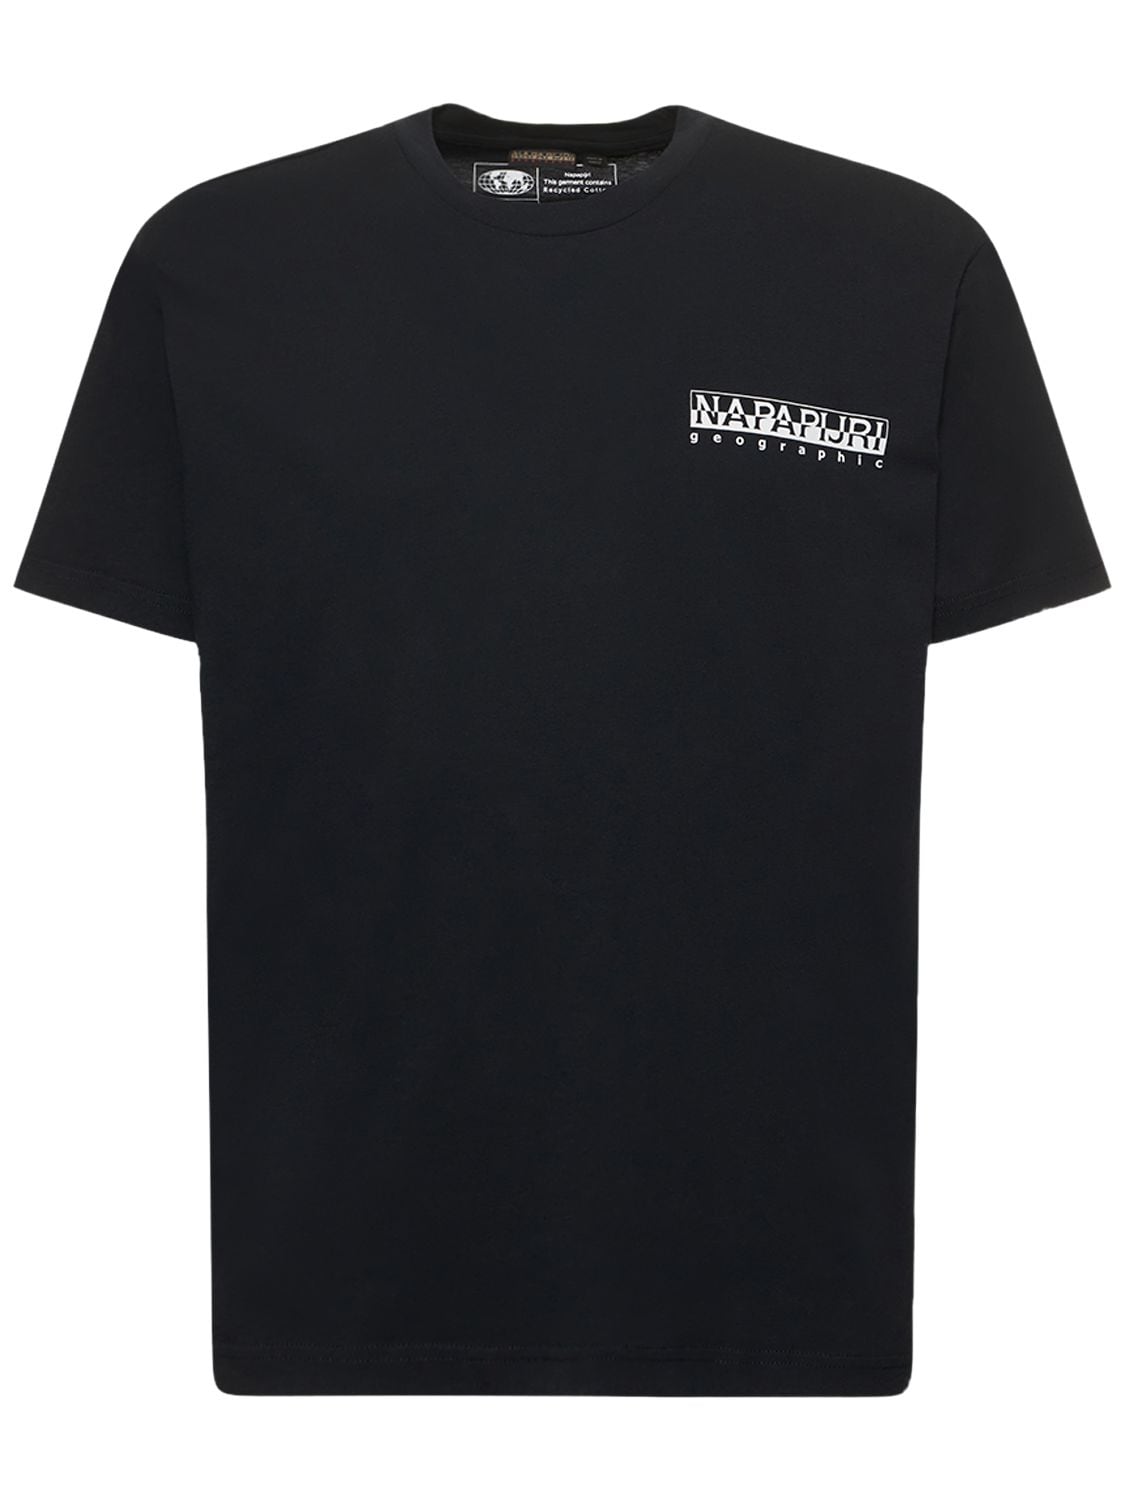 Napapijri S-jubones Printed T-shirt In Black